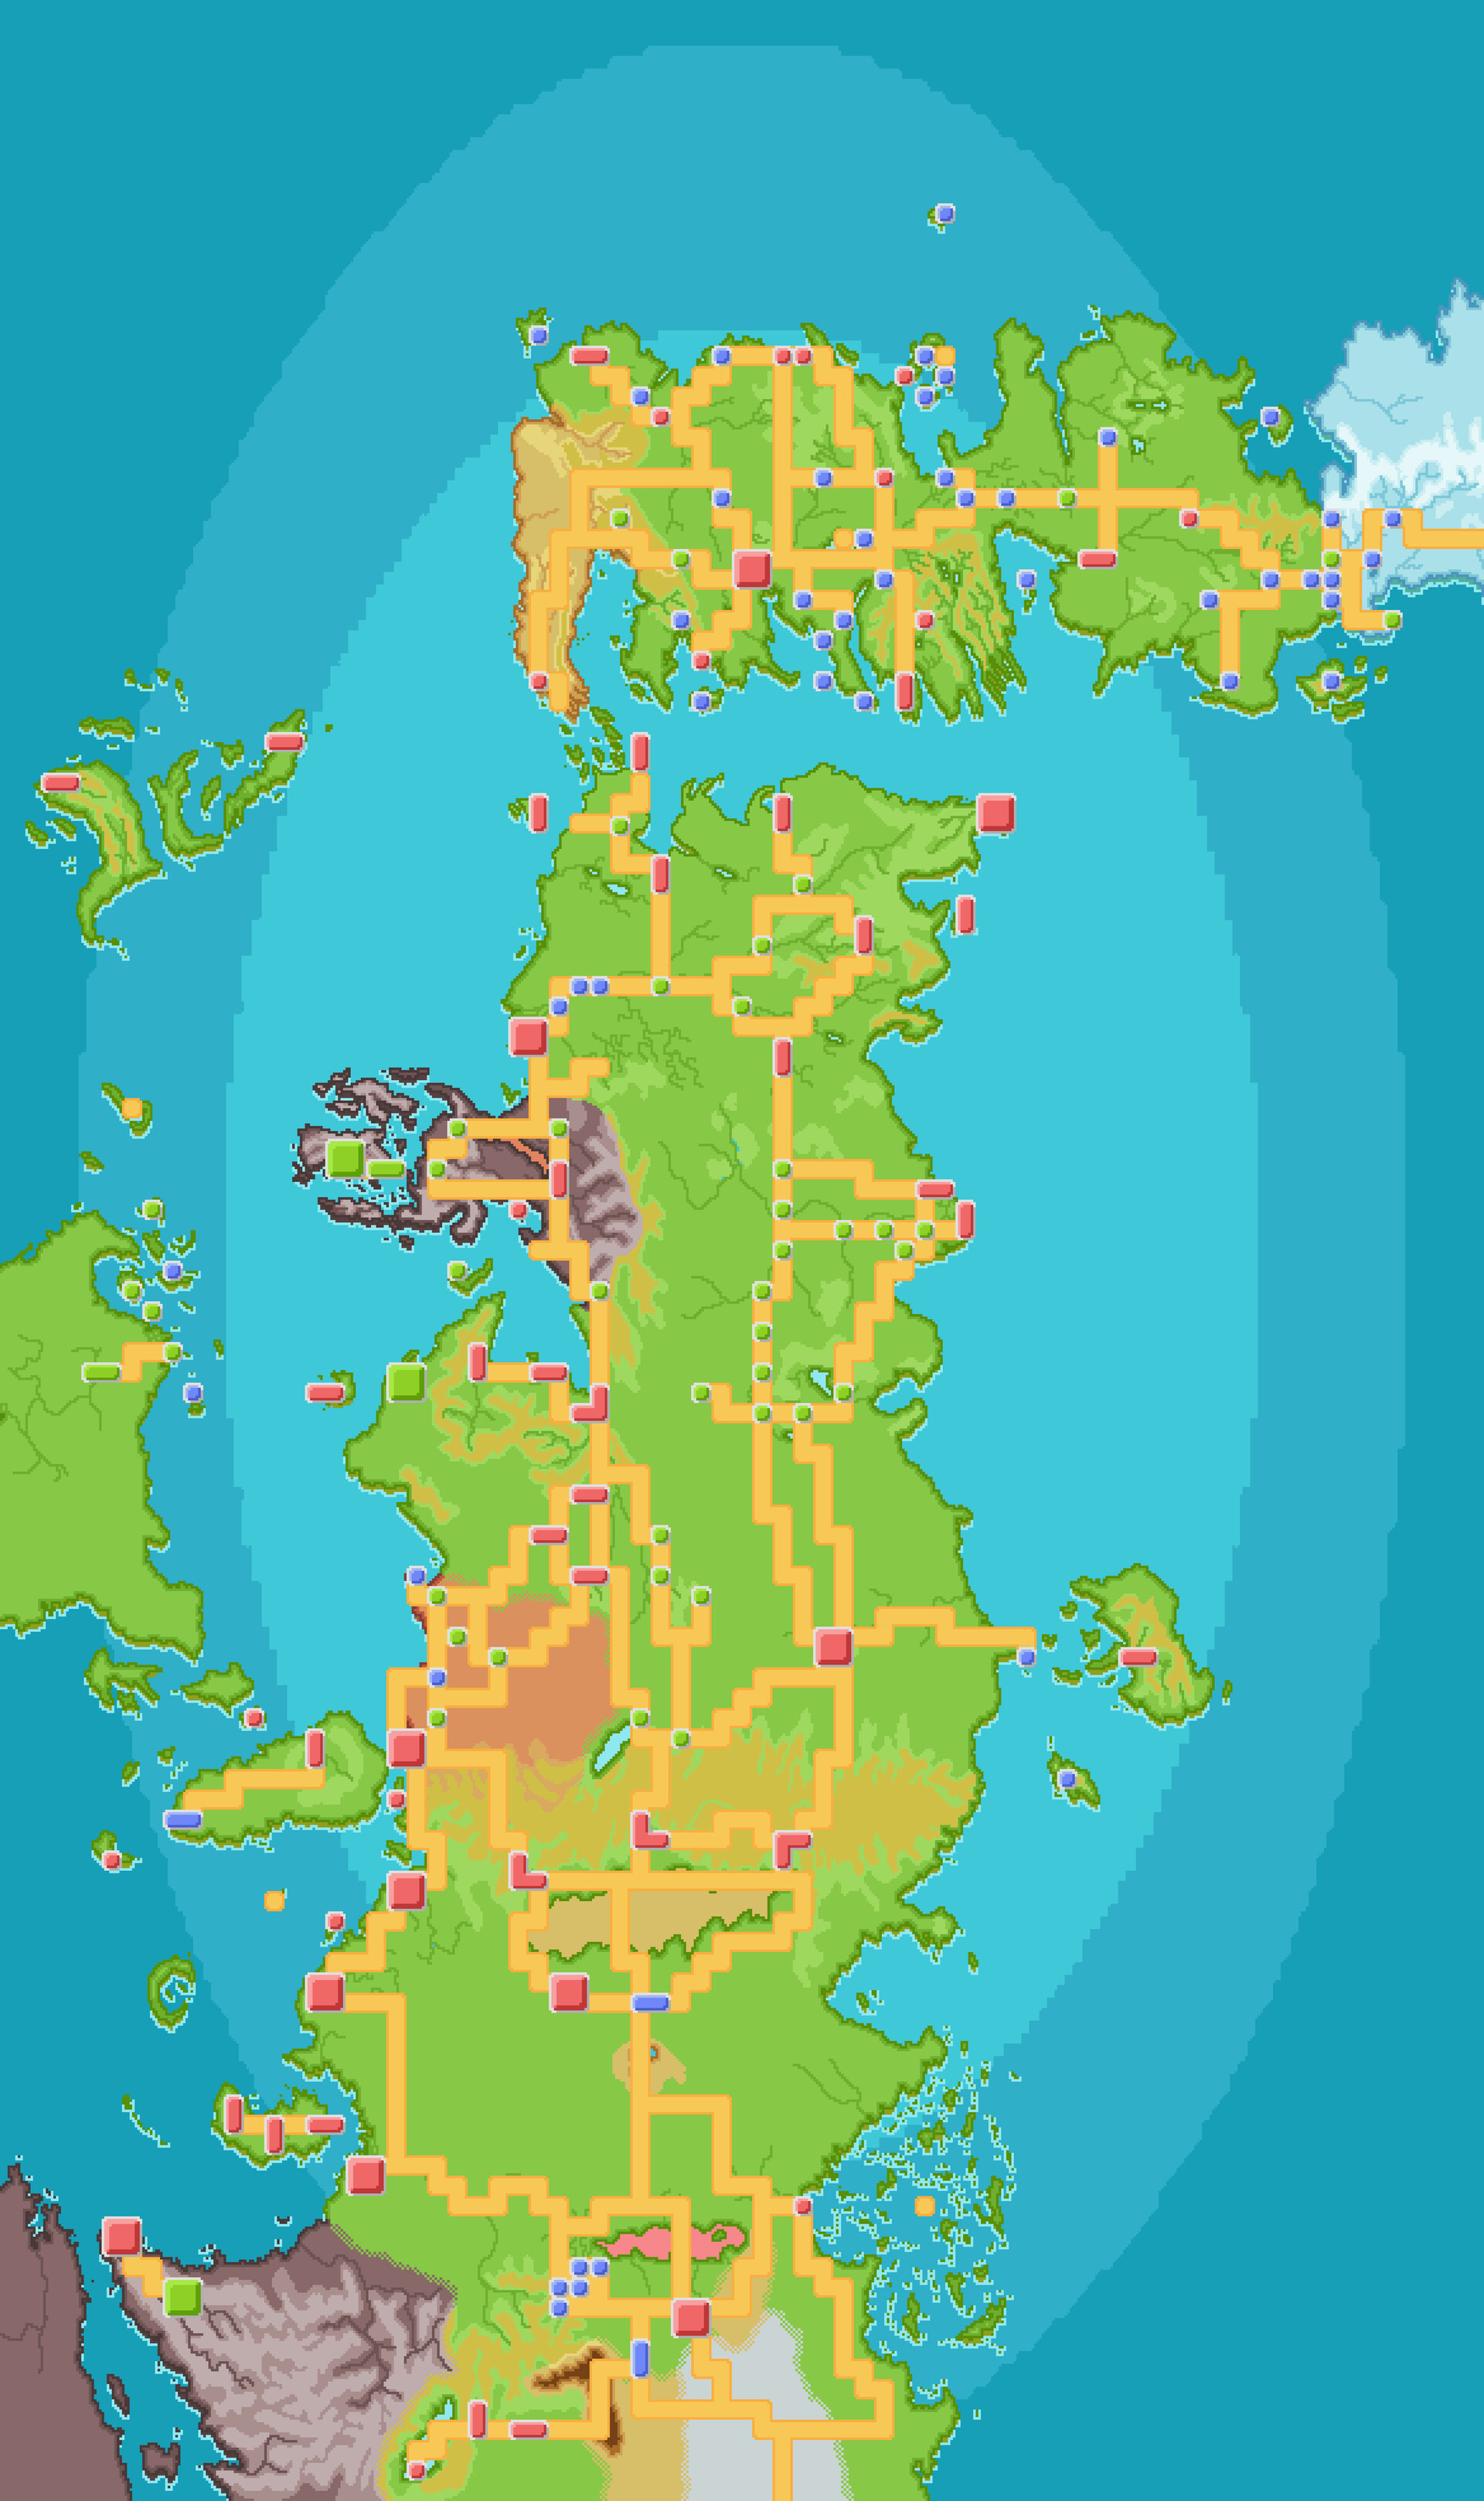 ArtStation - Pokémon Fire Red Full Map